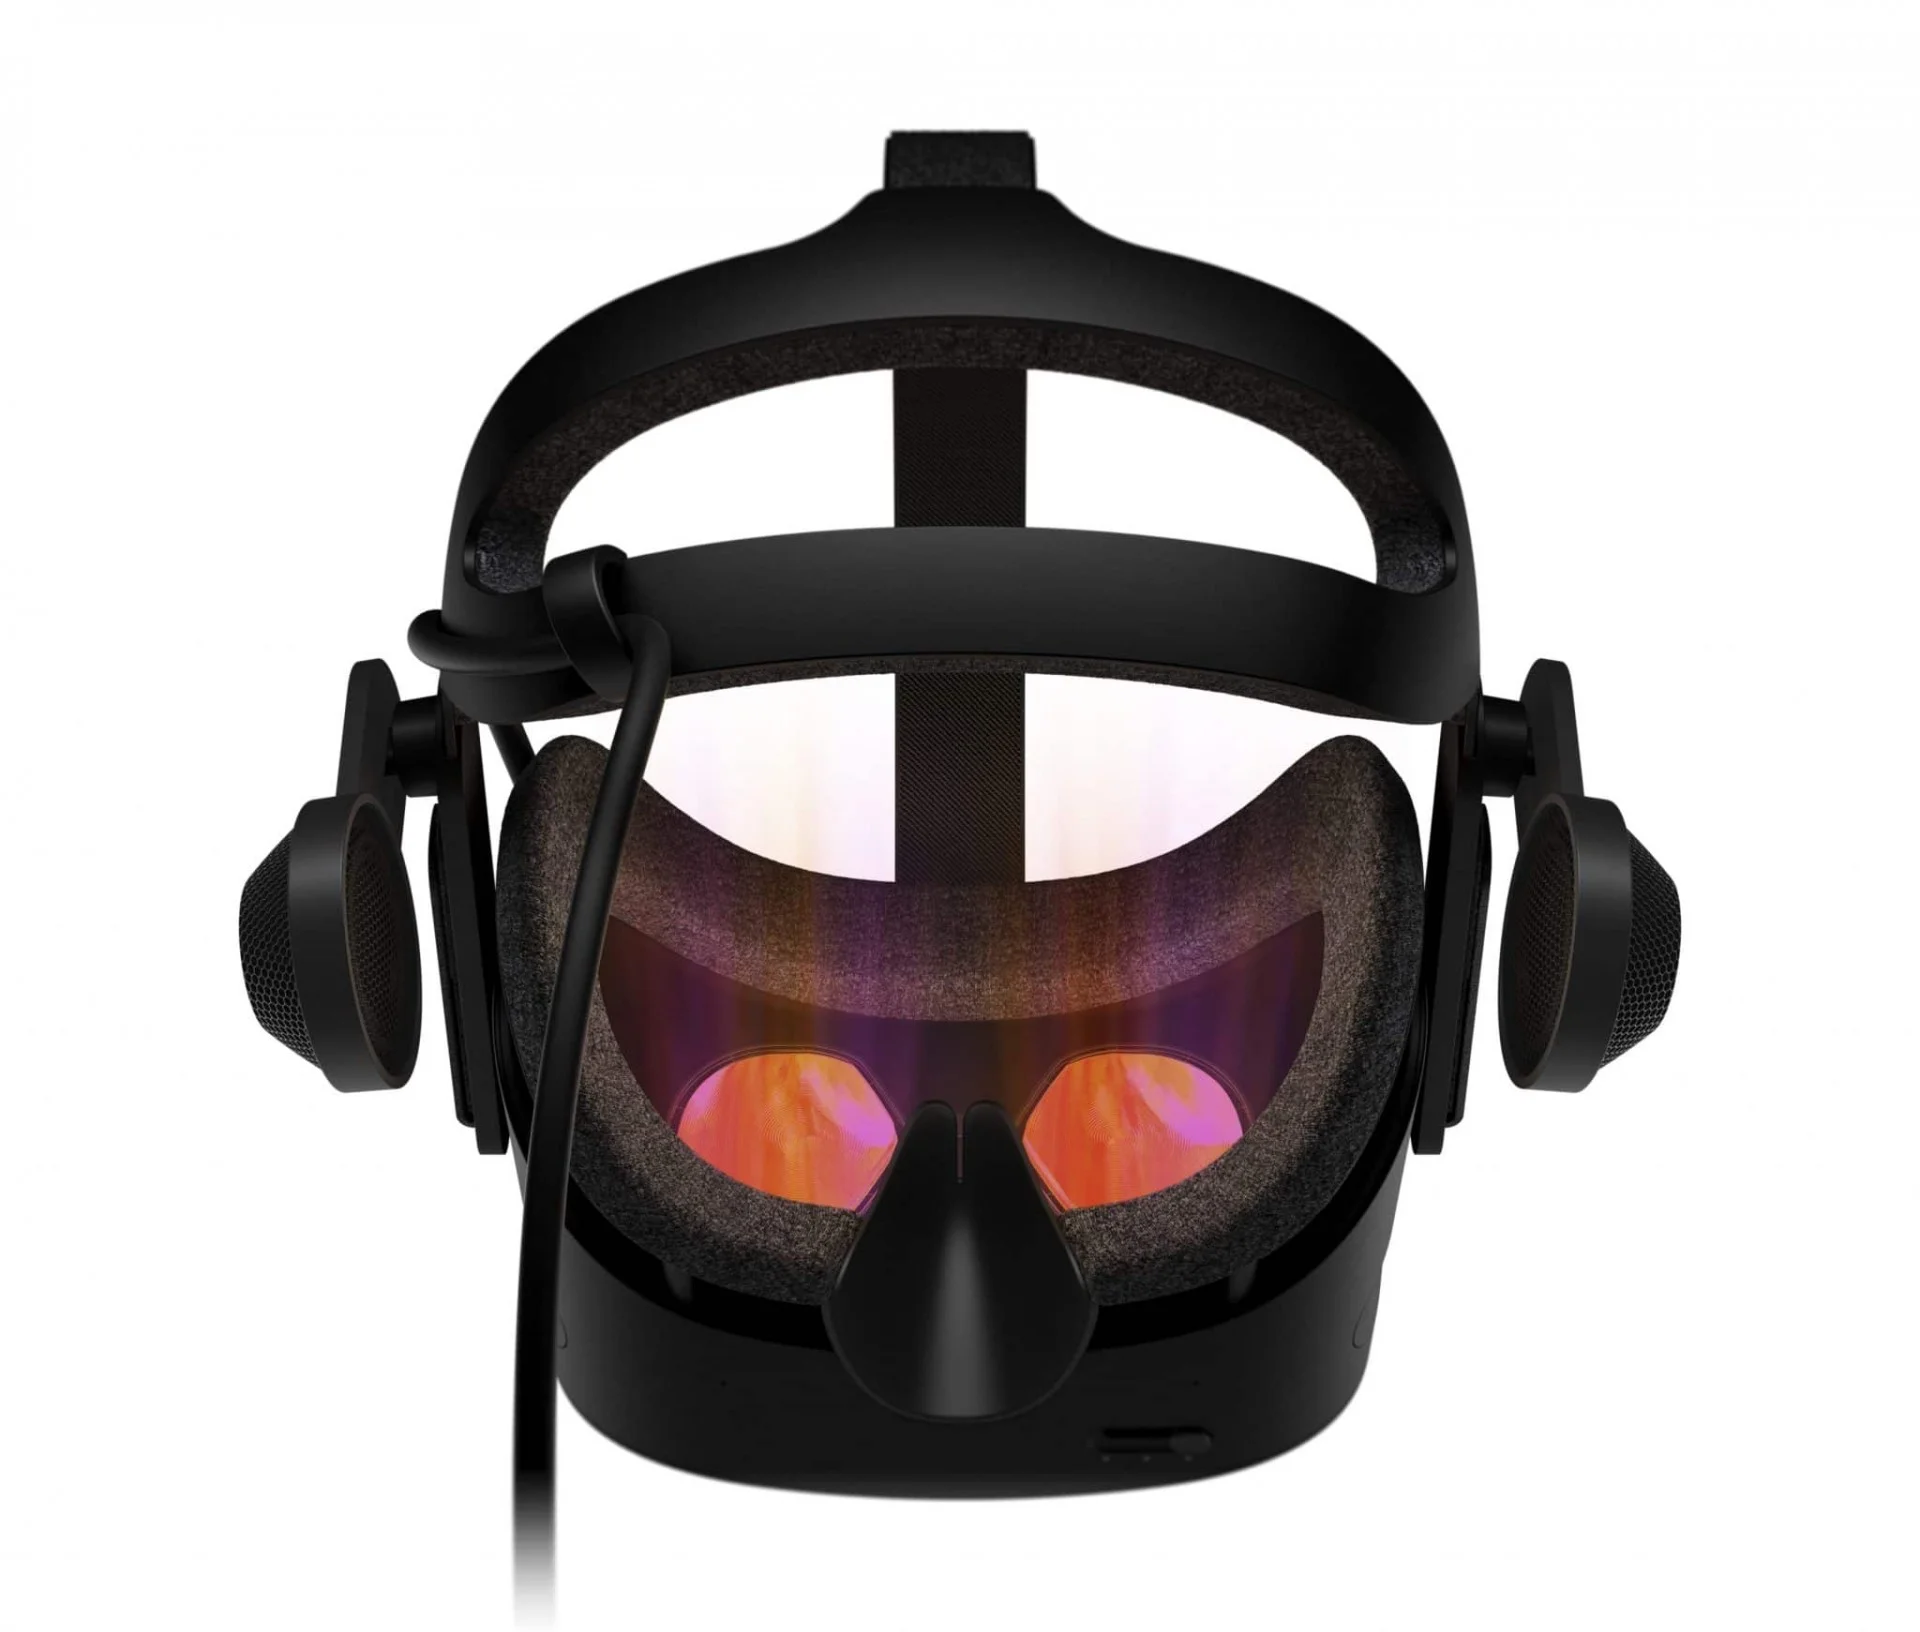 Премиальный VR-шлем от HP, Valve и Microsoft выйдет осенью - фото 3